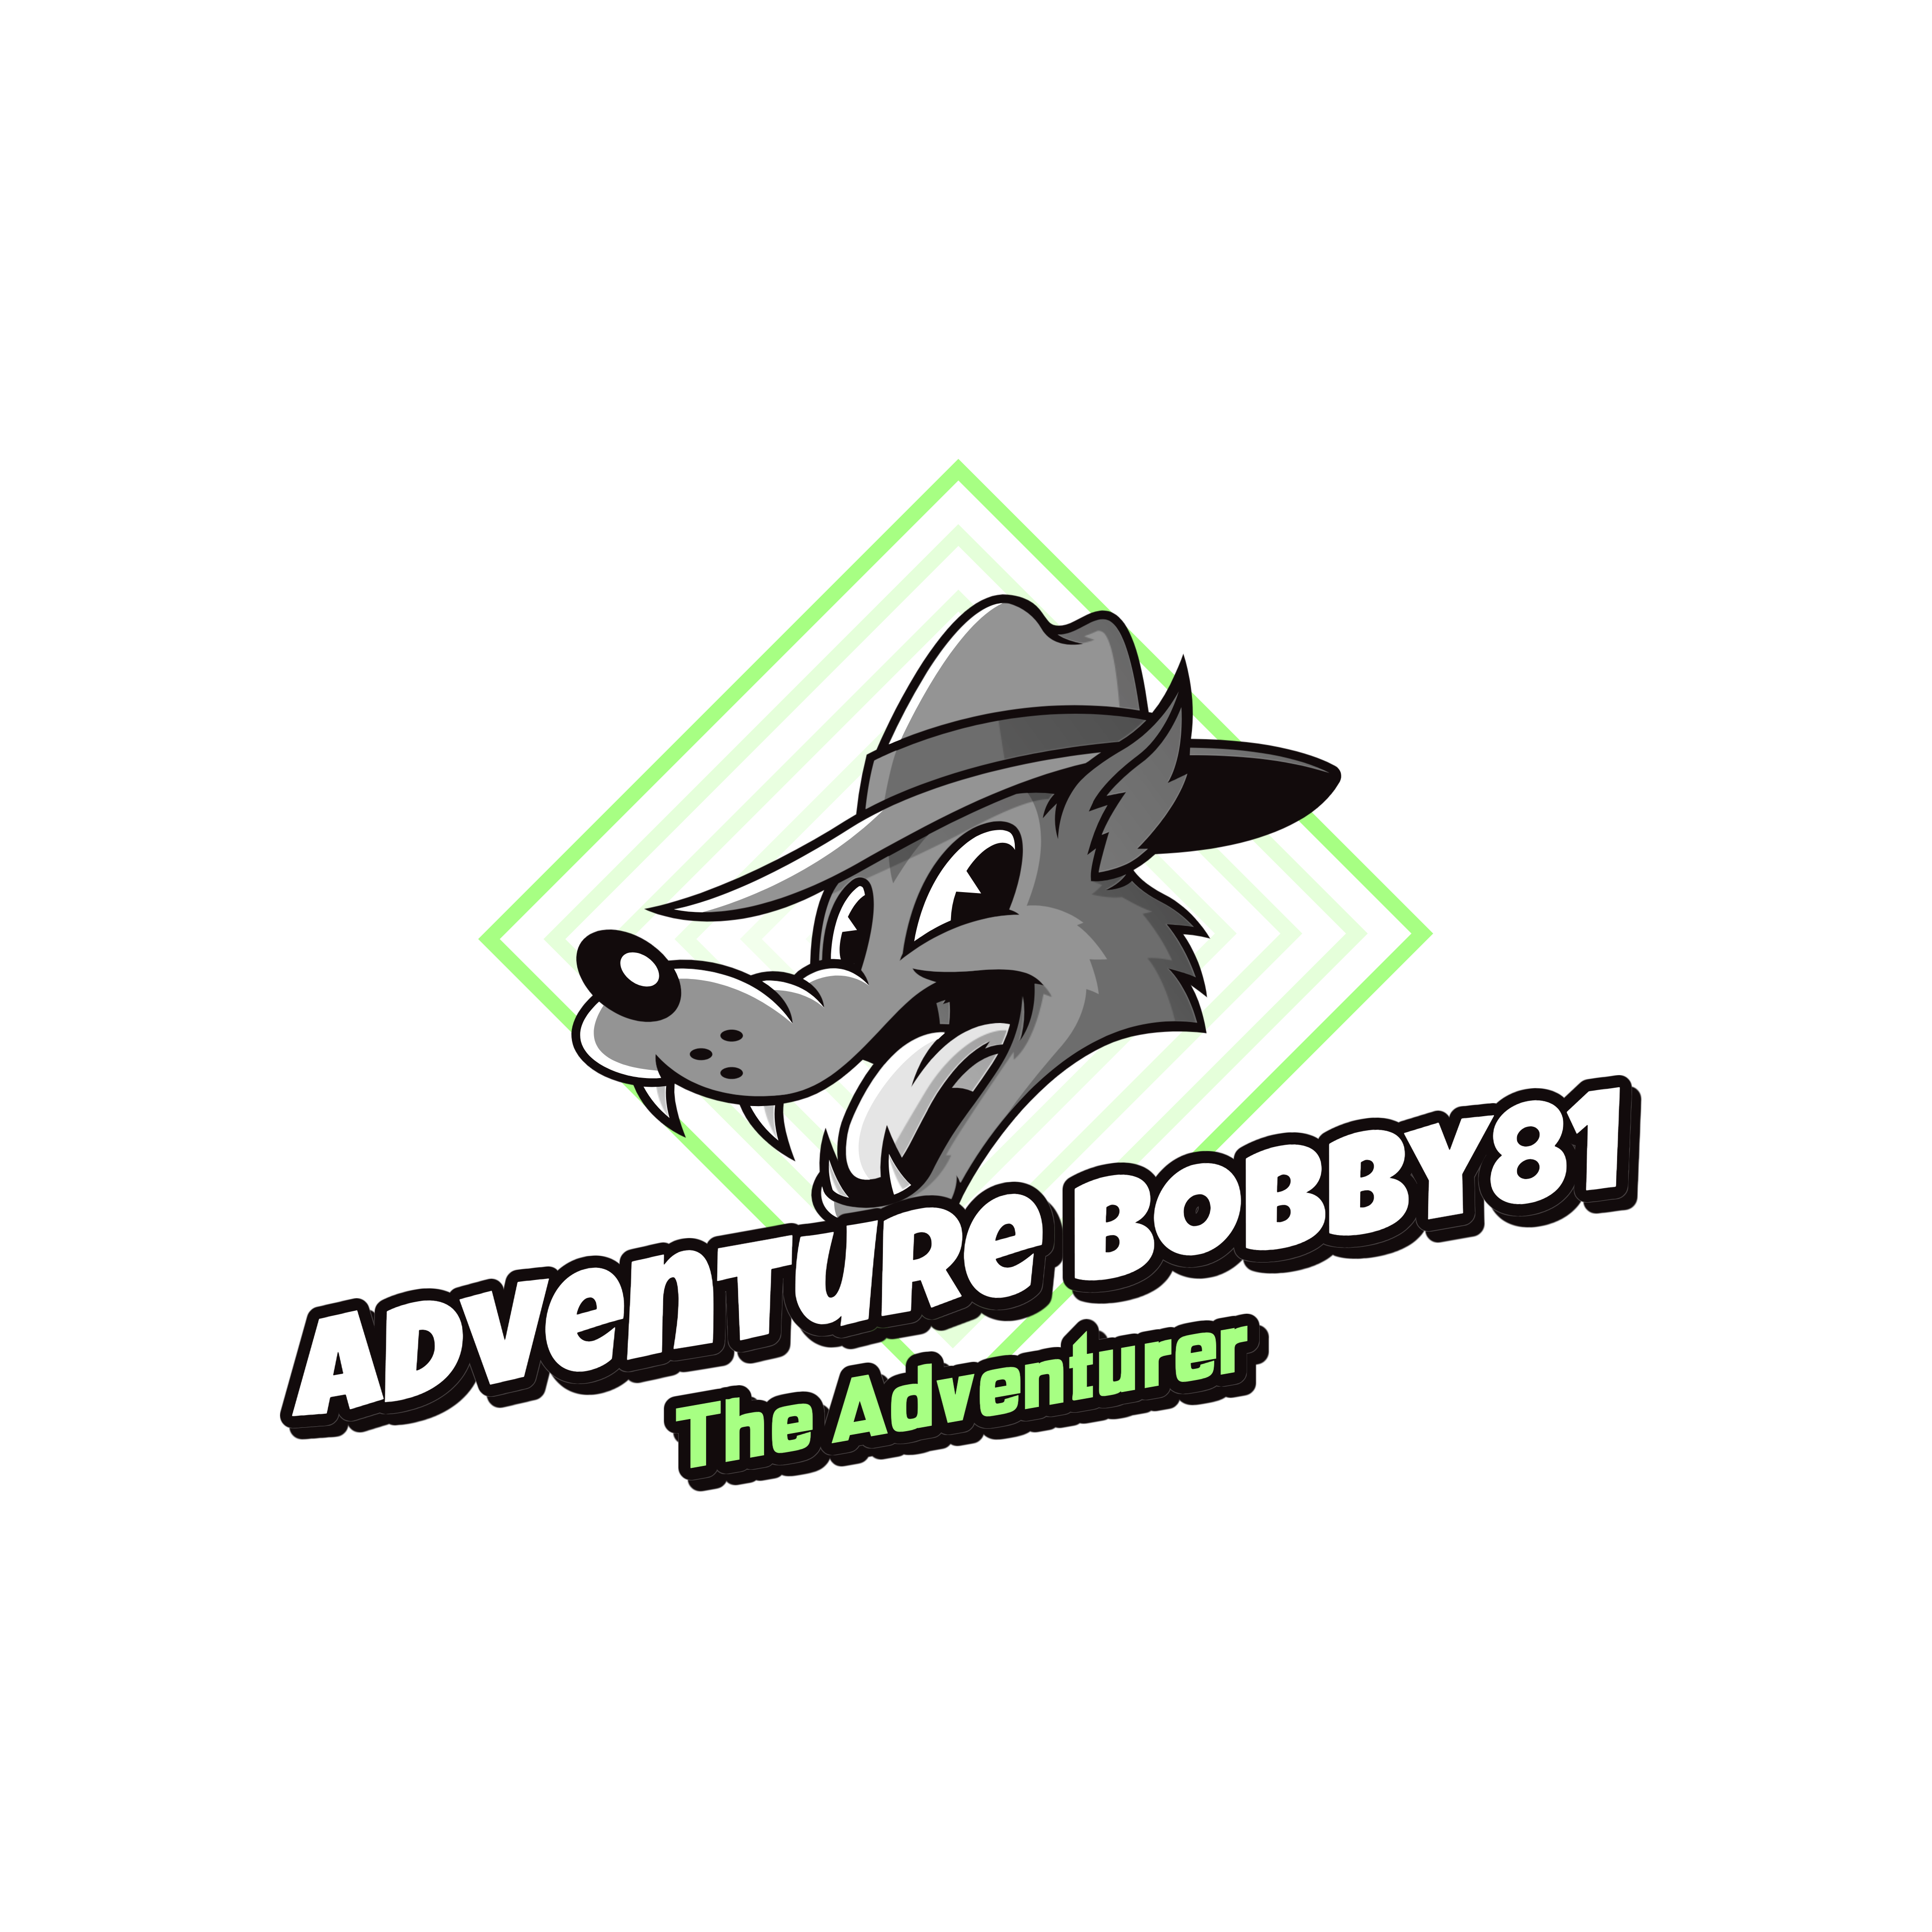 Adventure Bobby81